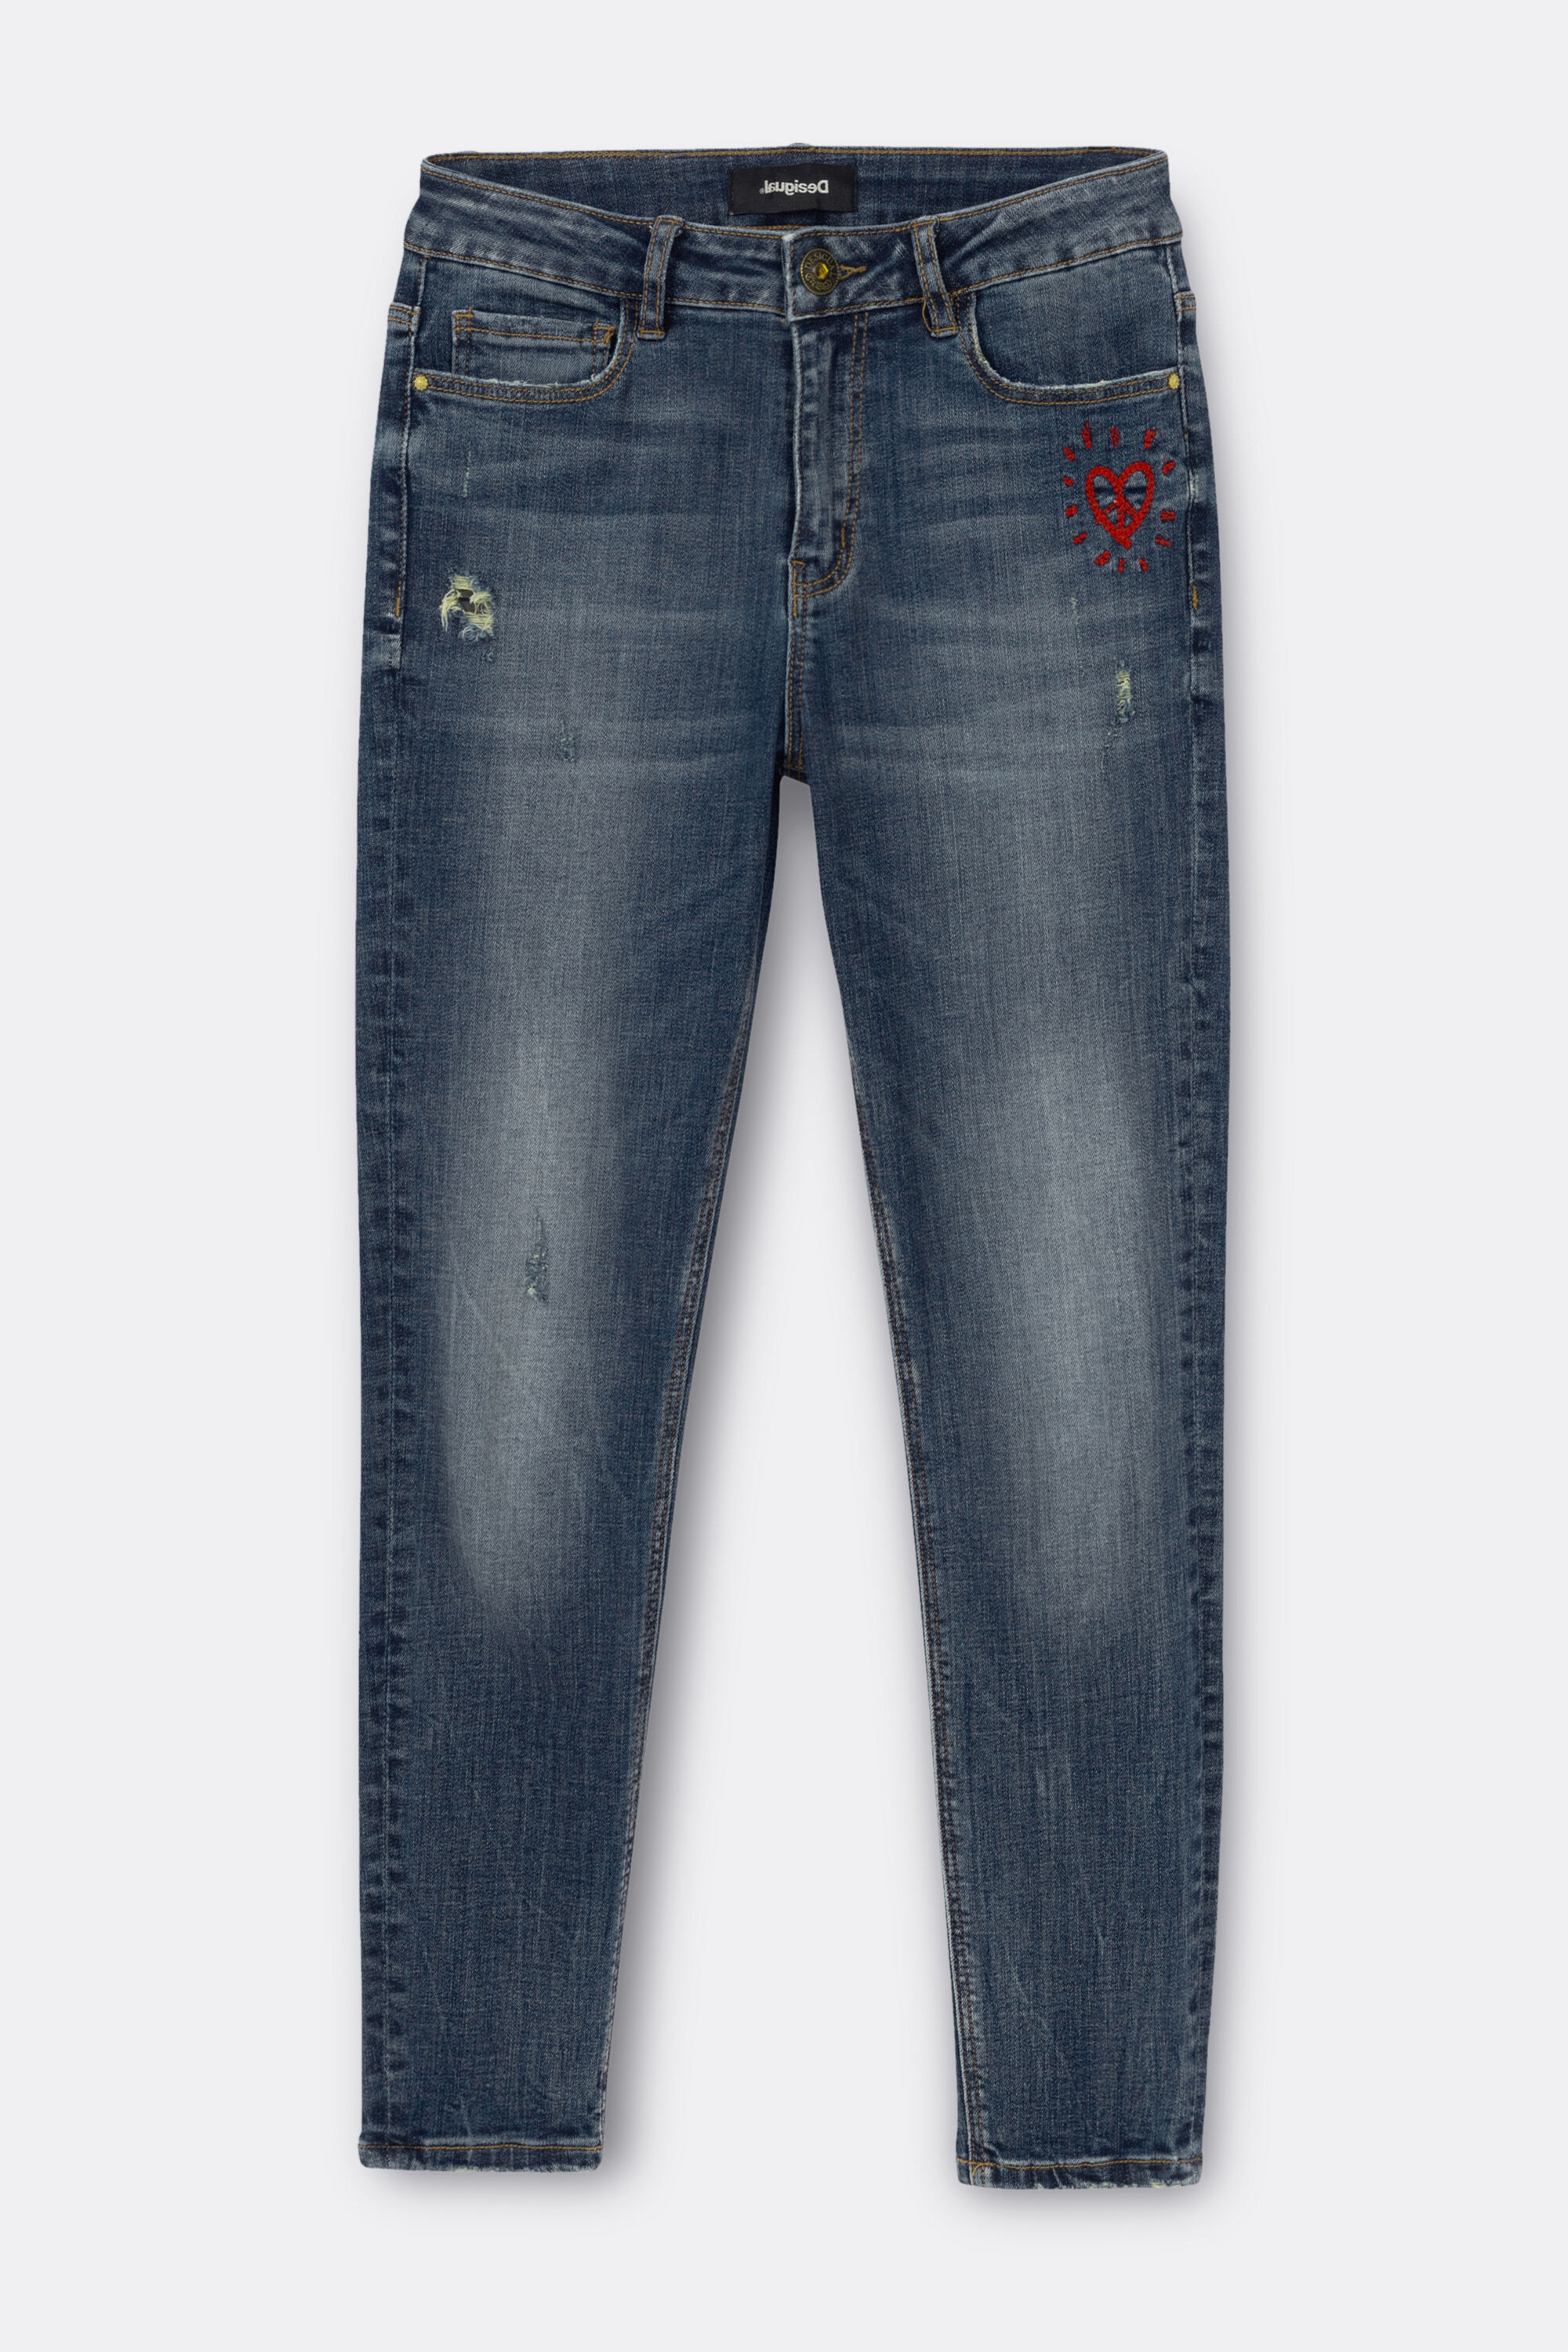 jeans desigual